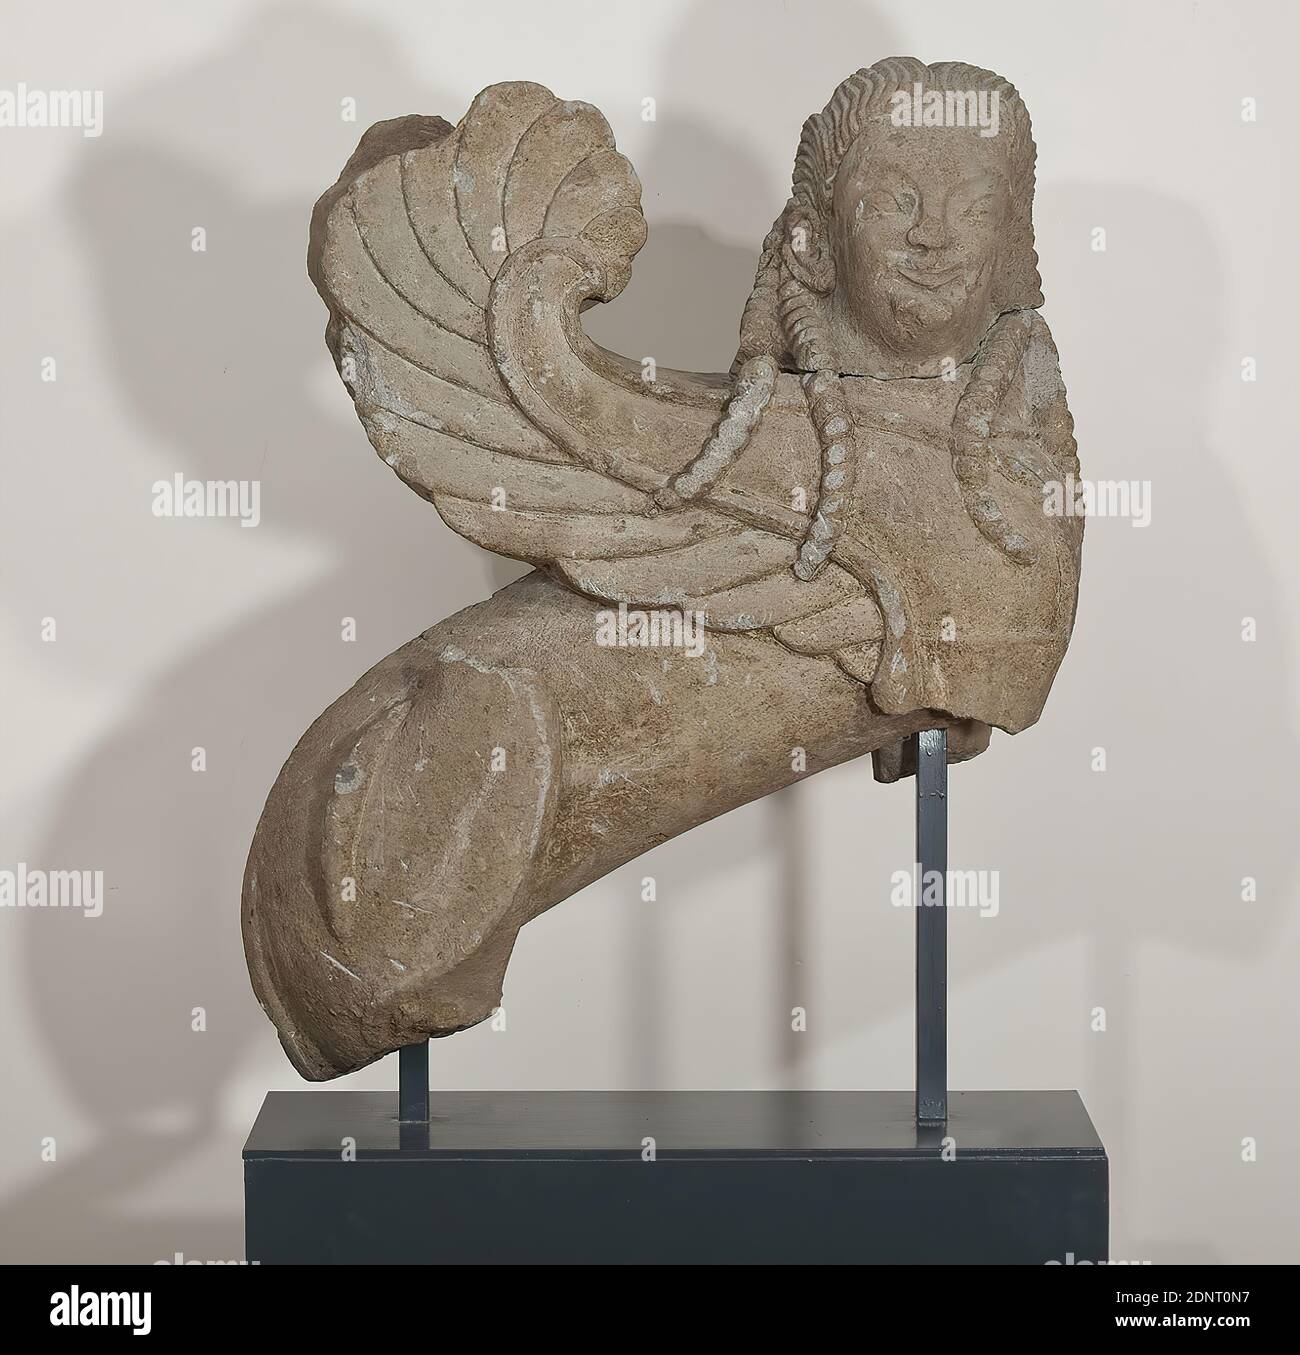 Sphinx, Tuff, ciselée, Tuff de Nenfro, ciselée, Total: Hauteur: 100.00 cm; largeur: 85.00 cm; profondeur: 33.00 cm, sculptures, monument funéraire, mobilier funéraire, Sphinx, le 'Sphinx de Hambourg' dans le schéma de siège grec commun est l'un des meilleurs exemples de sculpture archaïque étrusque conservée. Le corps cylindrique du lion du puissant hybride est montré en profil, tandis que la tête en forme humaine regarde l'observateur frontal. Les ailes sont courbées vers le haut en forme de faucille, la queue est courbée autour de la cuisse arrière droite. Banque D'Images